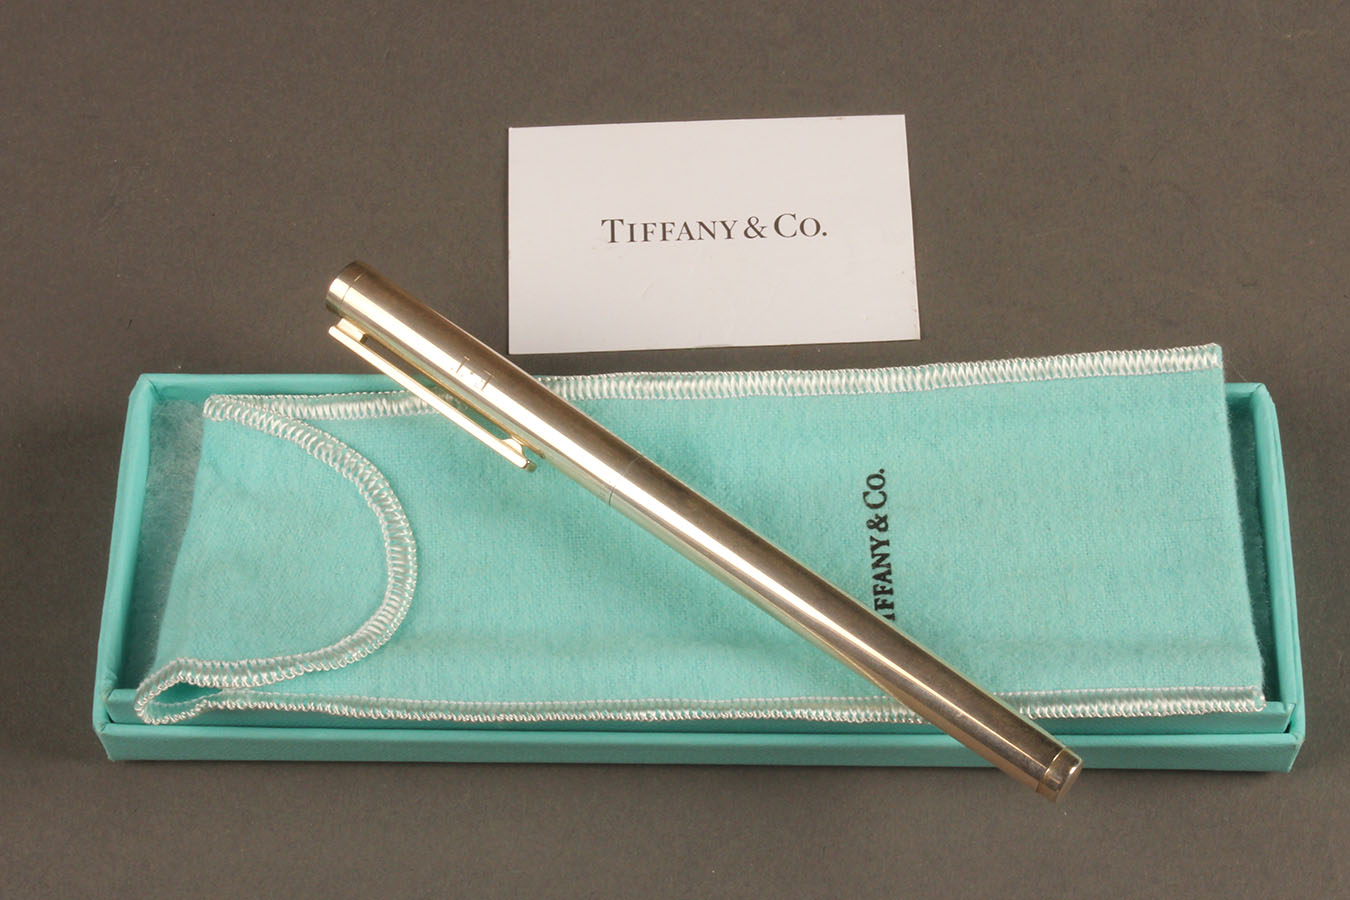 tiffany & co sterling silver pen